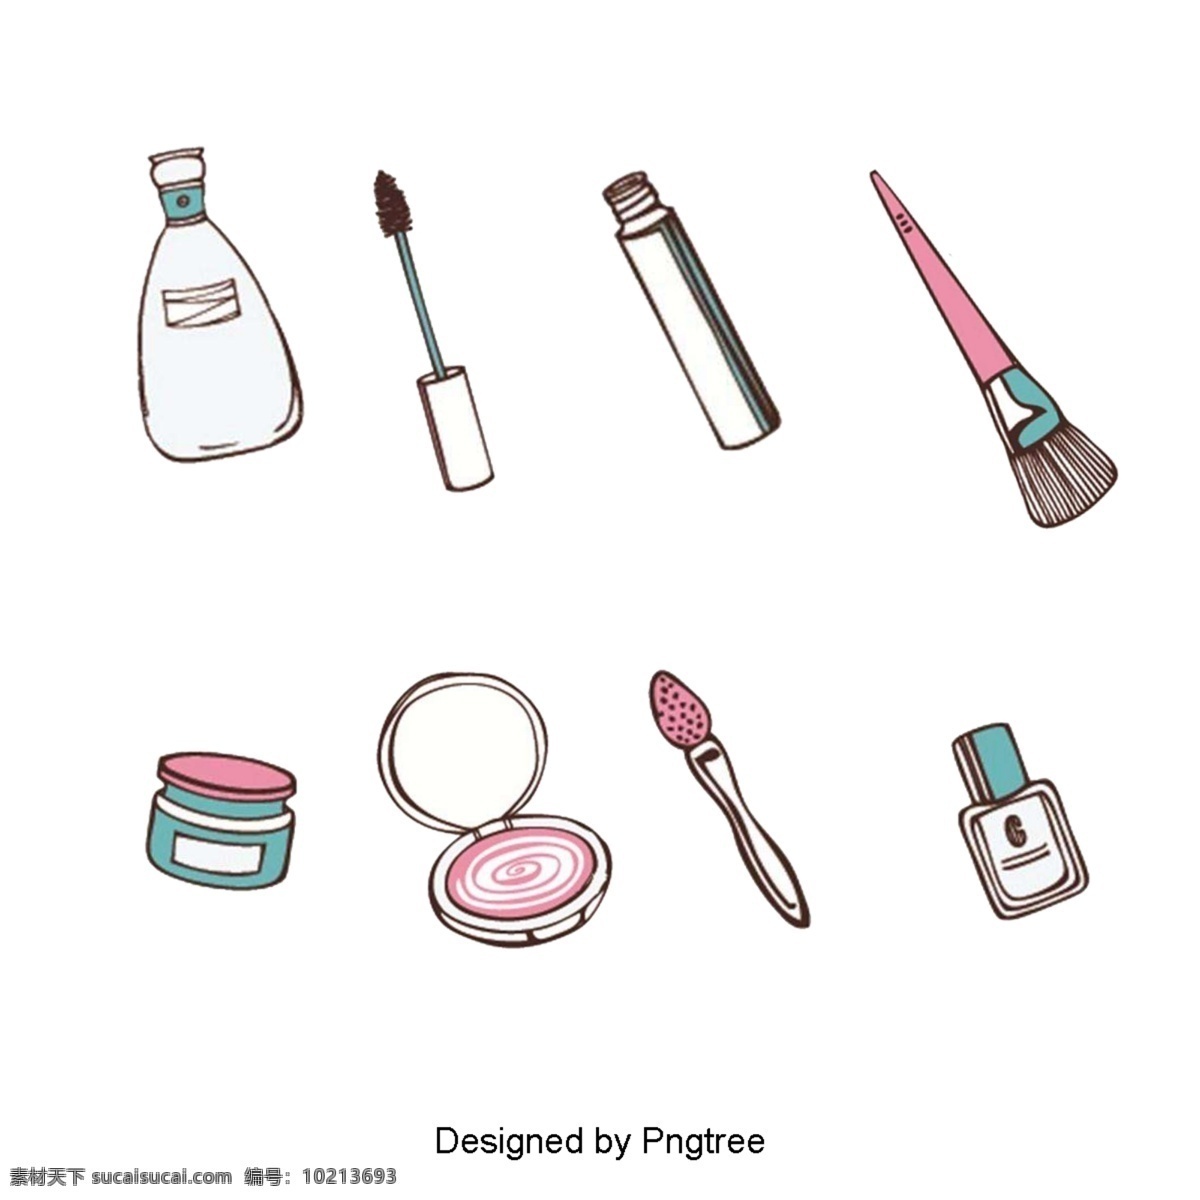 卡通 手绘 化妆品 简单 风格 口红 创意 图形 图案